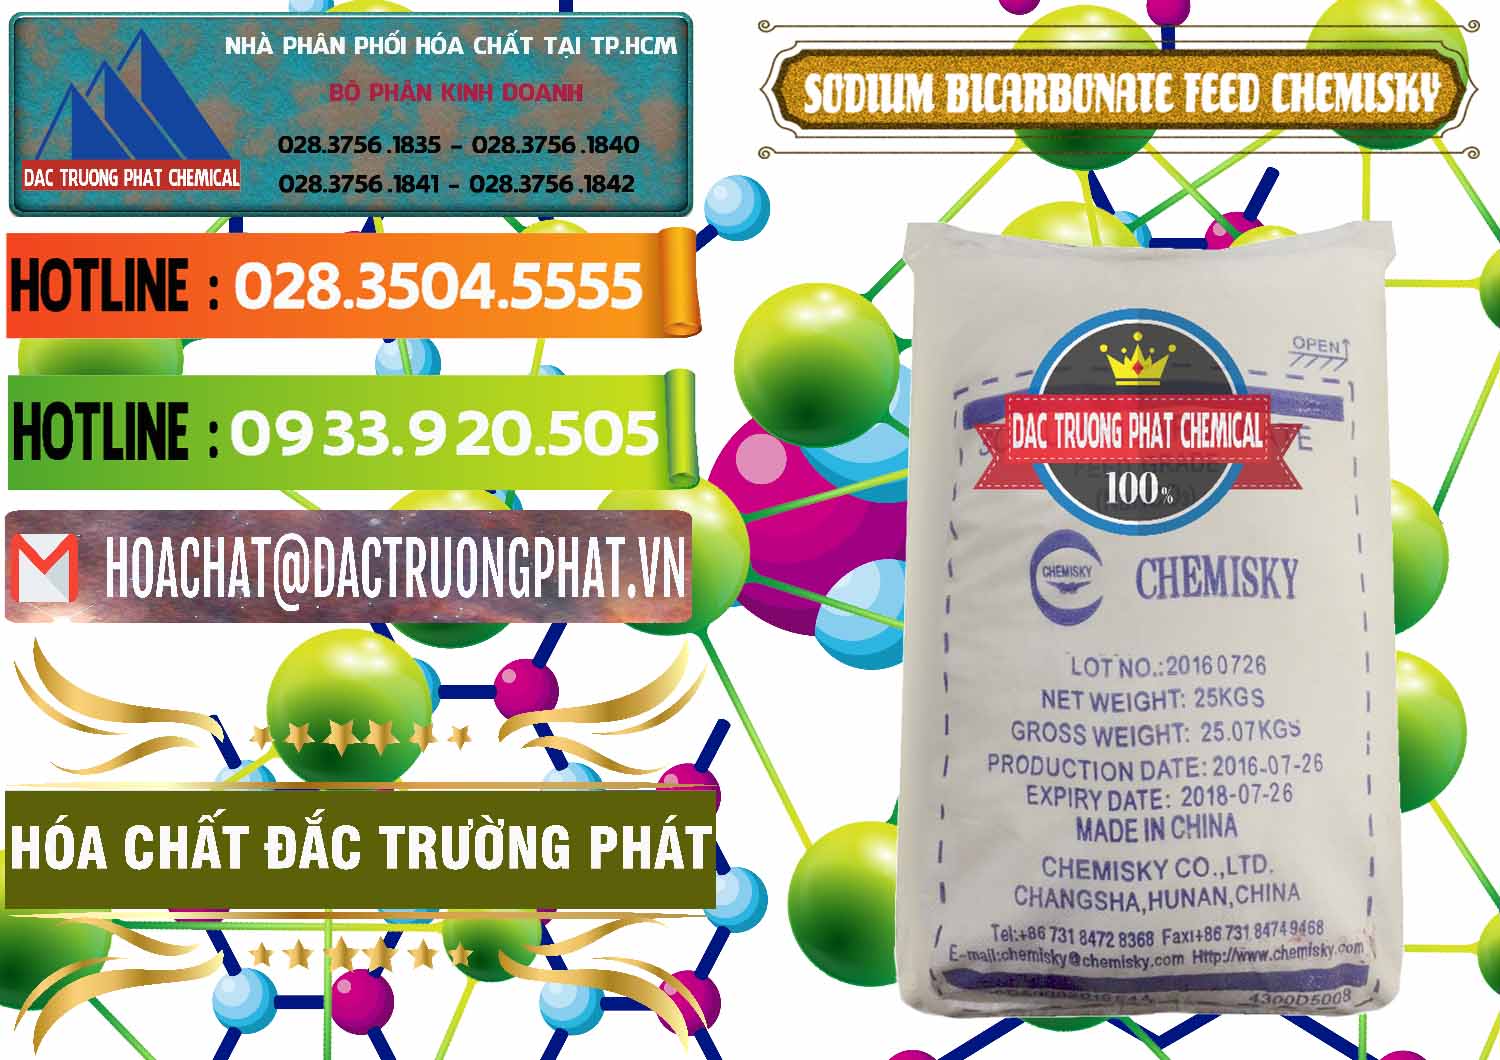 Cty chuyên phân phối & bán Sodium Bicarbonate – Bicar NaHCO3 Feed Grade Chemisky Trung Quốc China - 0264 - Đơn vị phân phối và cung cấp hóa chất tại TP.HCM - cungcaphoachat.com.vn